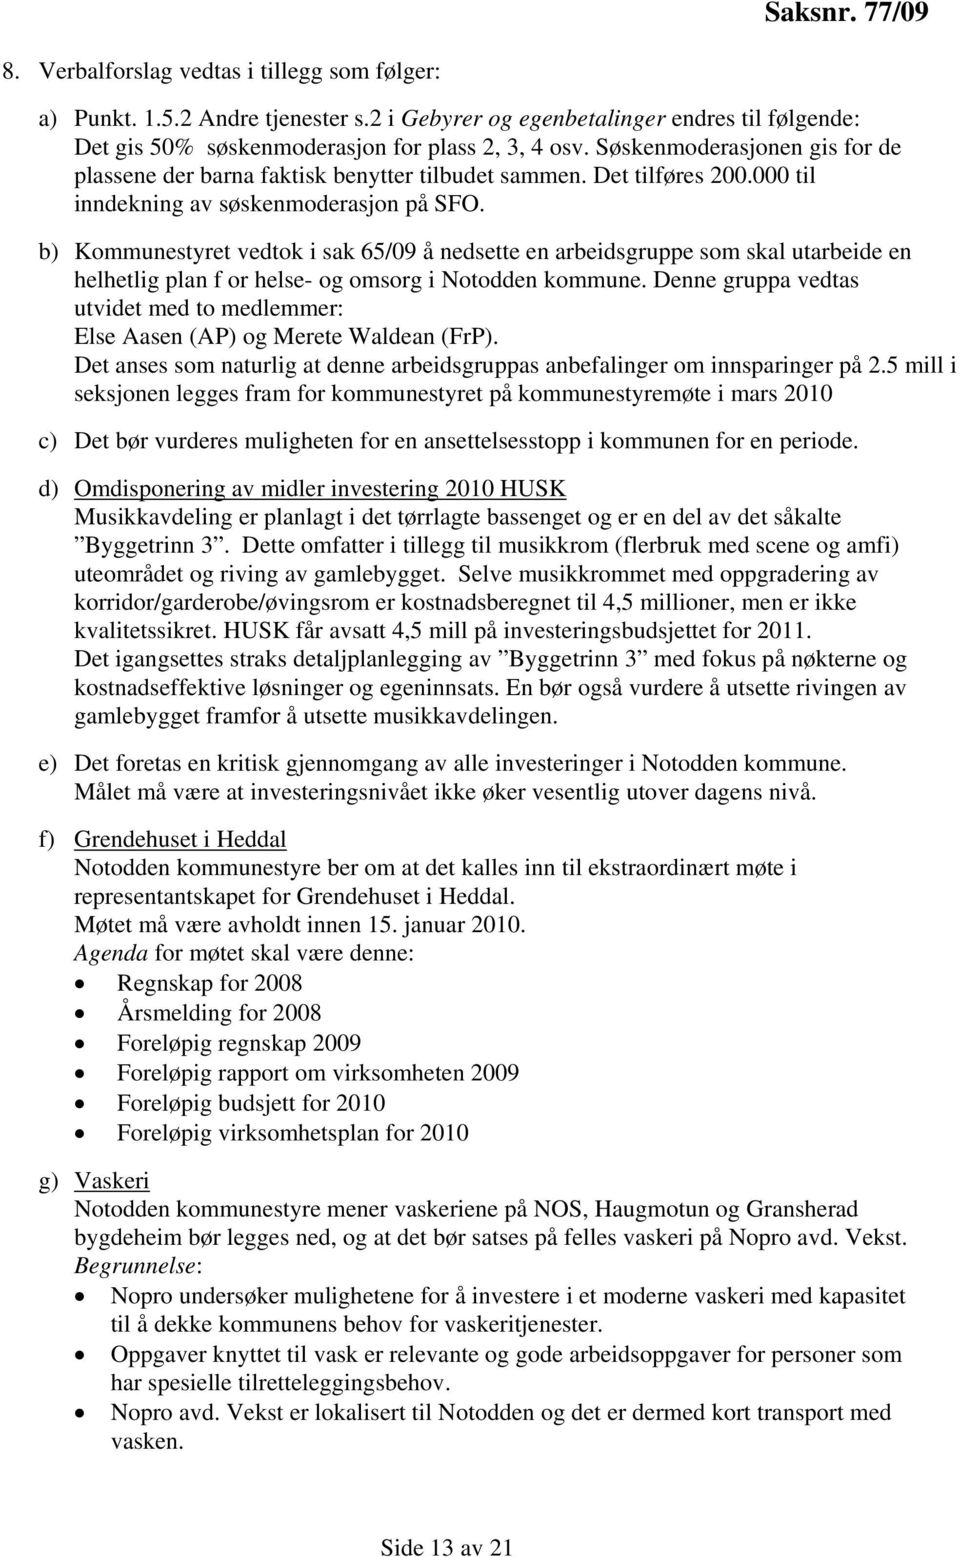 b) Kommunestyret vedtok i sak 65/09 å nedsette en arbeidsgruppe som skal utarbeide en helhetlig plan f or helse- og omsorg i Notodden kommune.